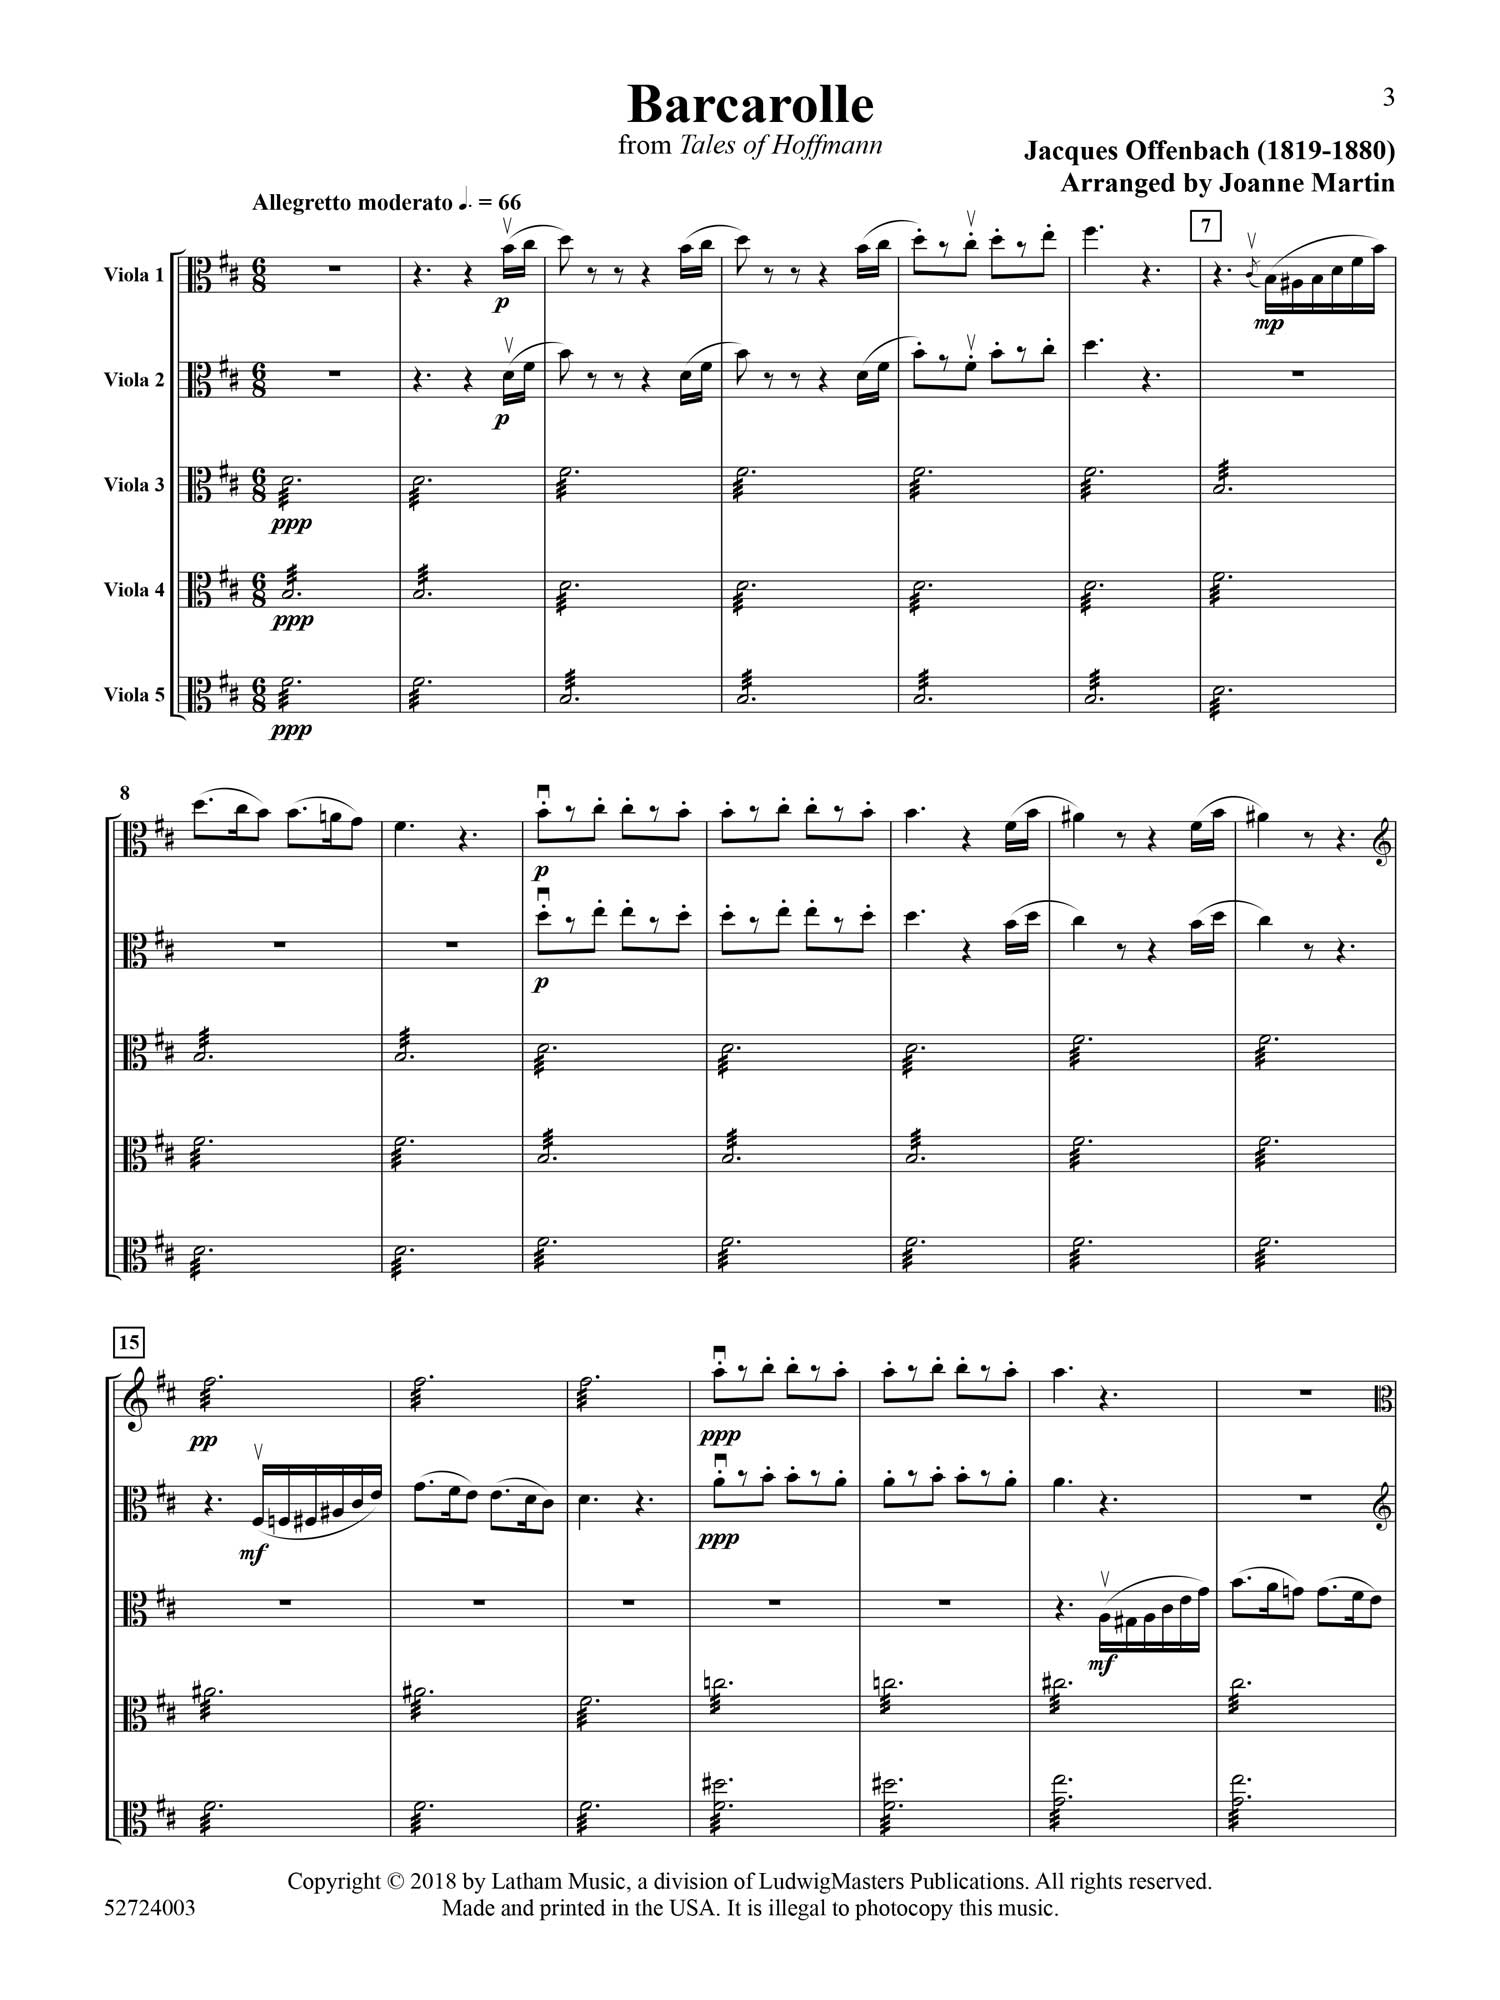 barcarolle-viola-quintet-score.jpg